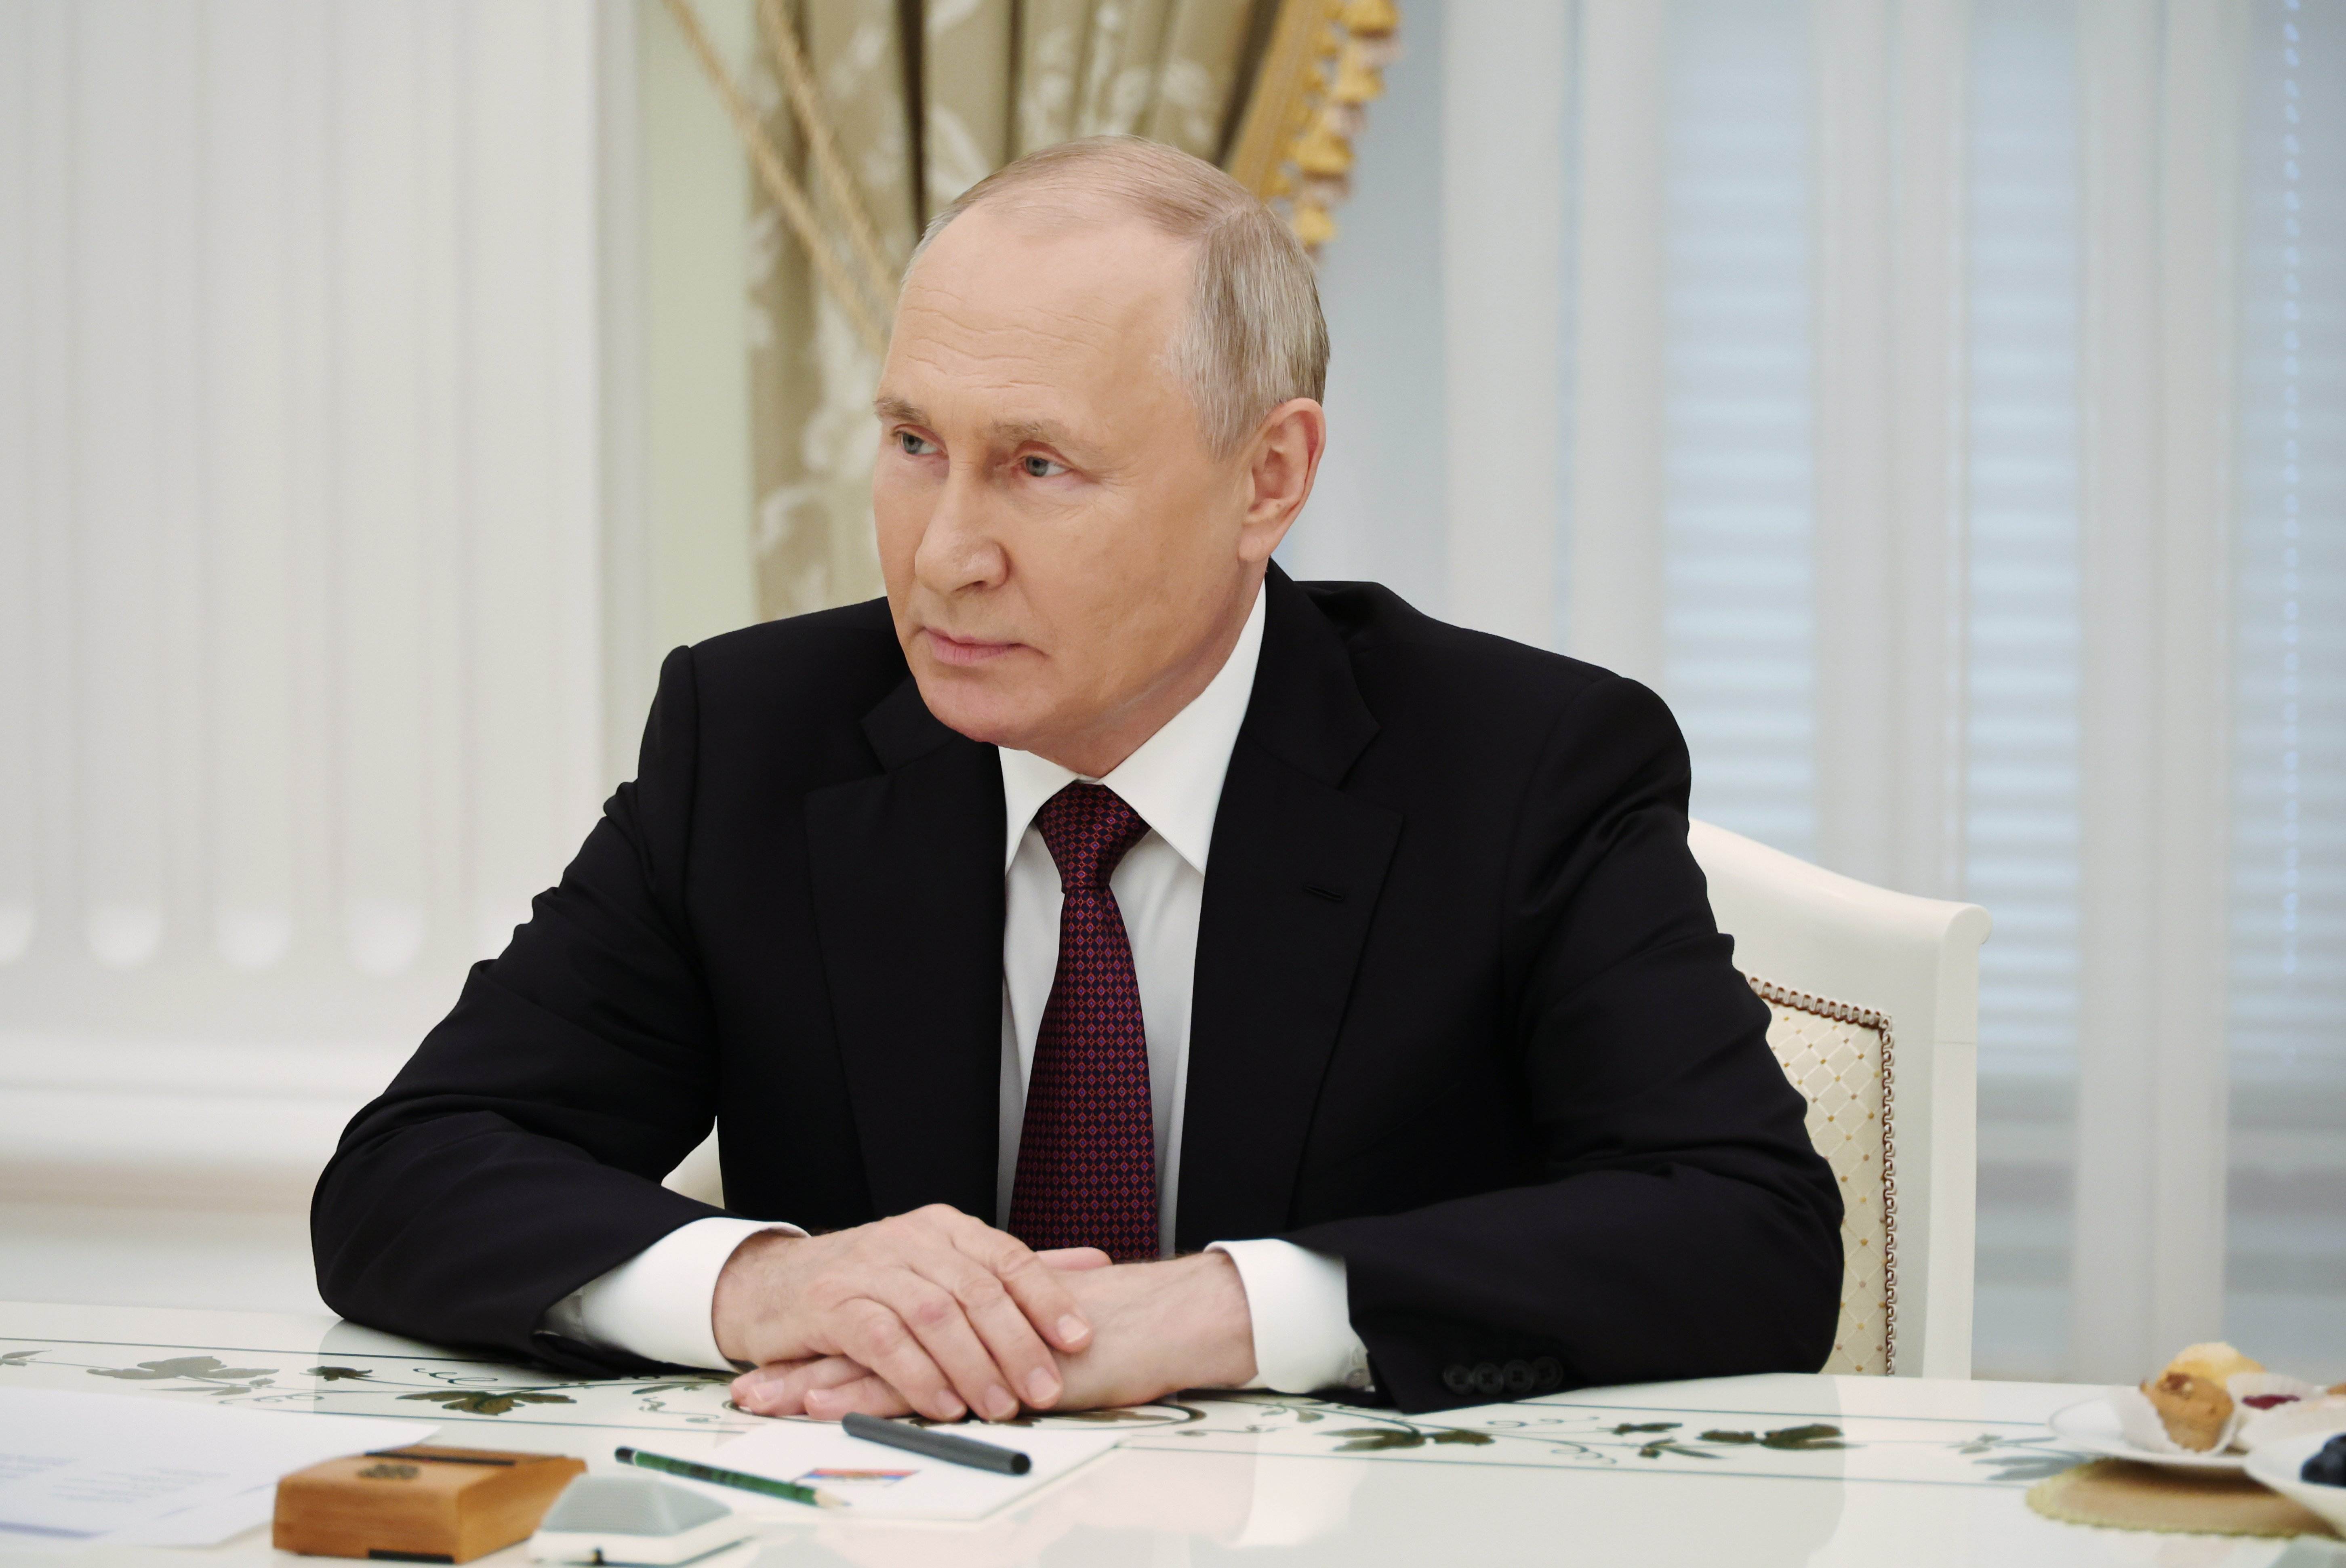 Les tres maneres de Putin per silenciar els seus rivals